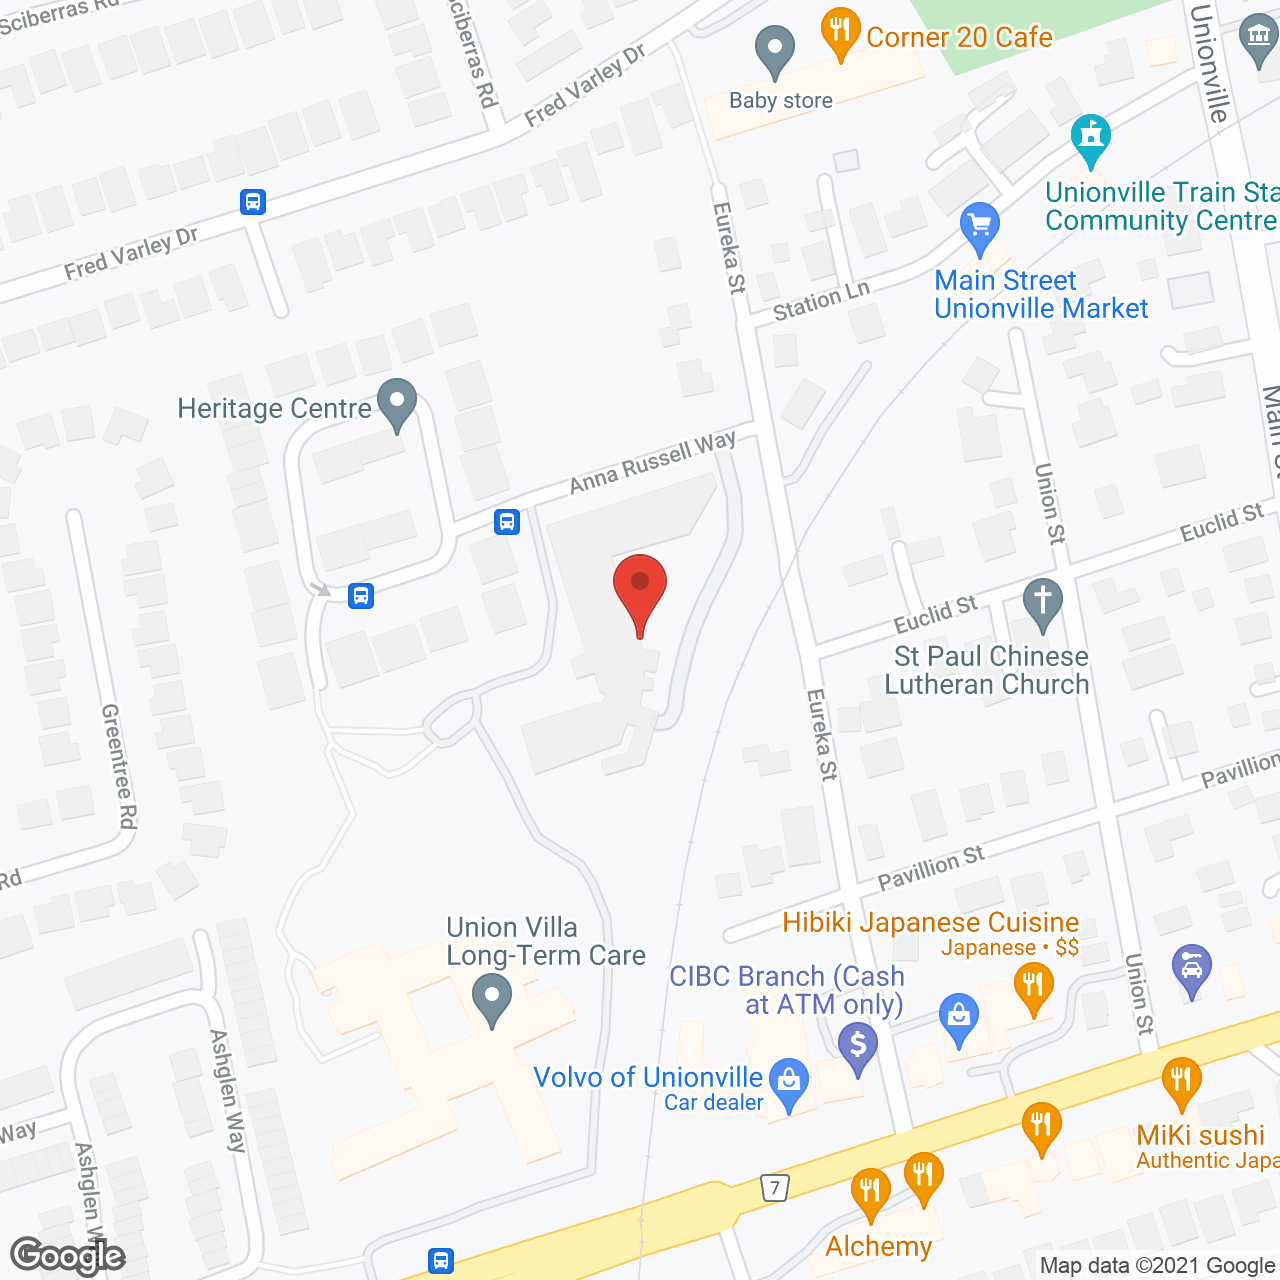 Wyndham Gardens Apartments in google map